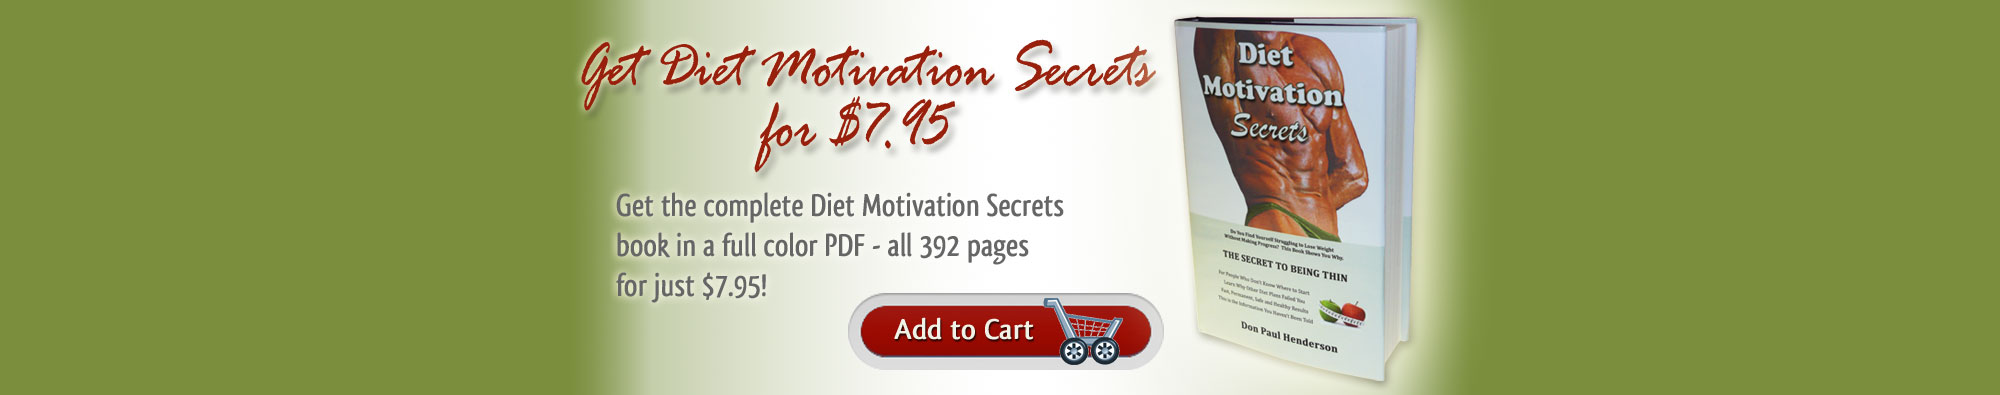 Diet Motivation Secrets